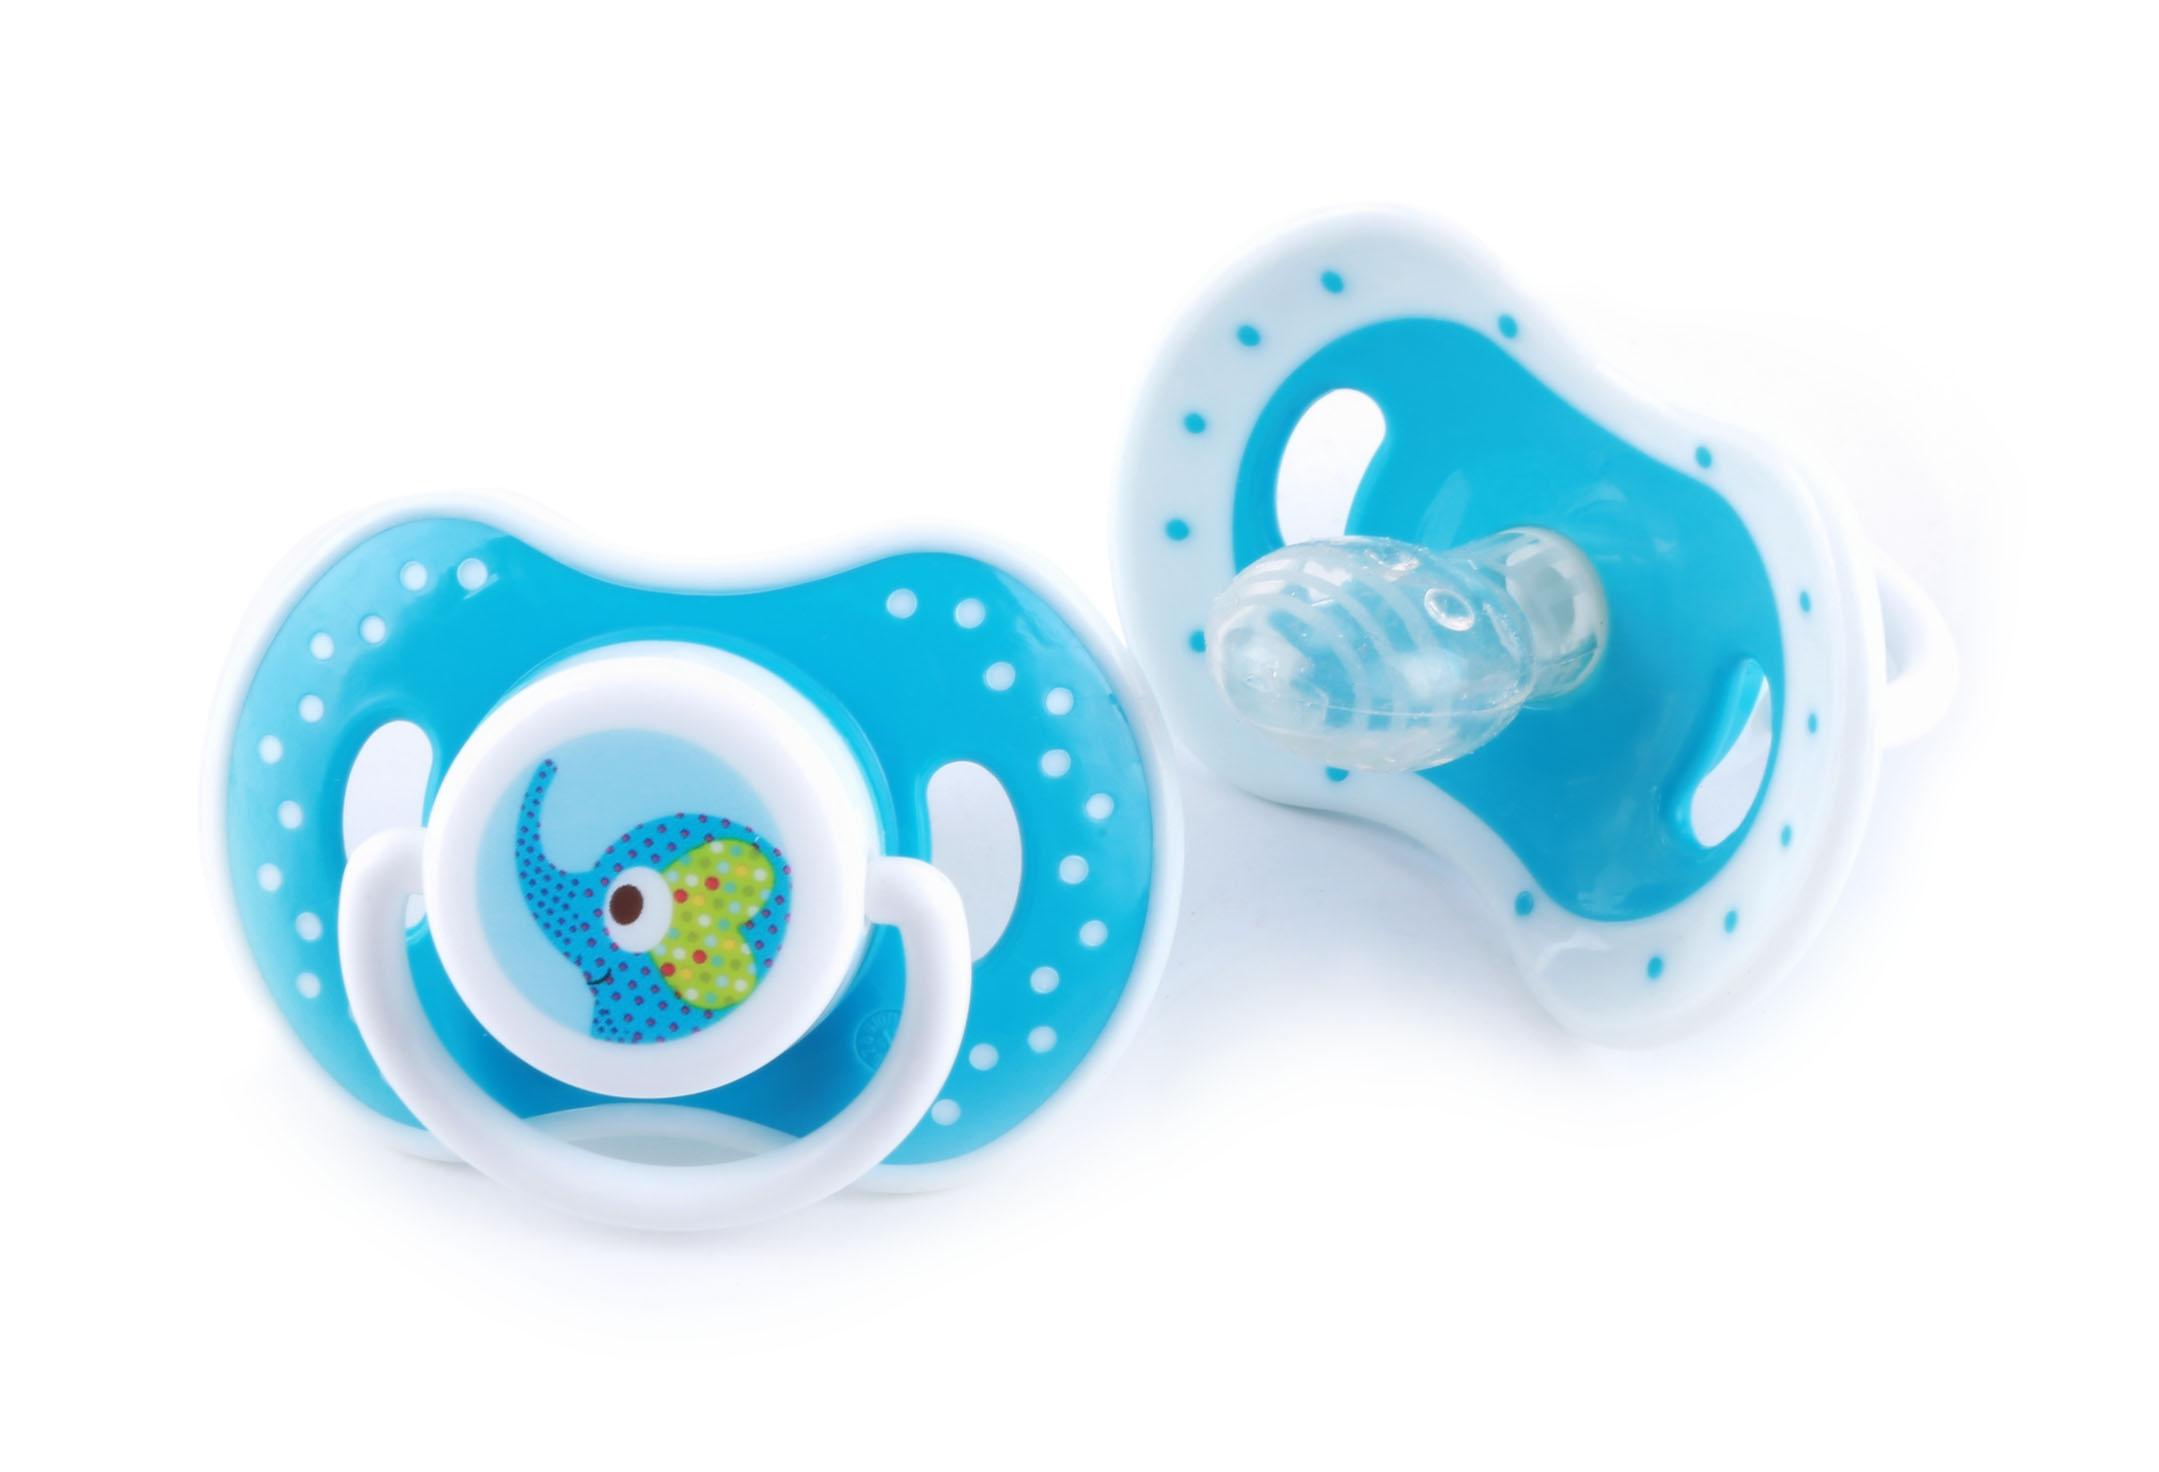 لهاية اطفال (لهاية بيبي) 2 قطع - أزرق Baby Plus 2Pcs New Born Baby Pacifier With Silicone Baglet